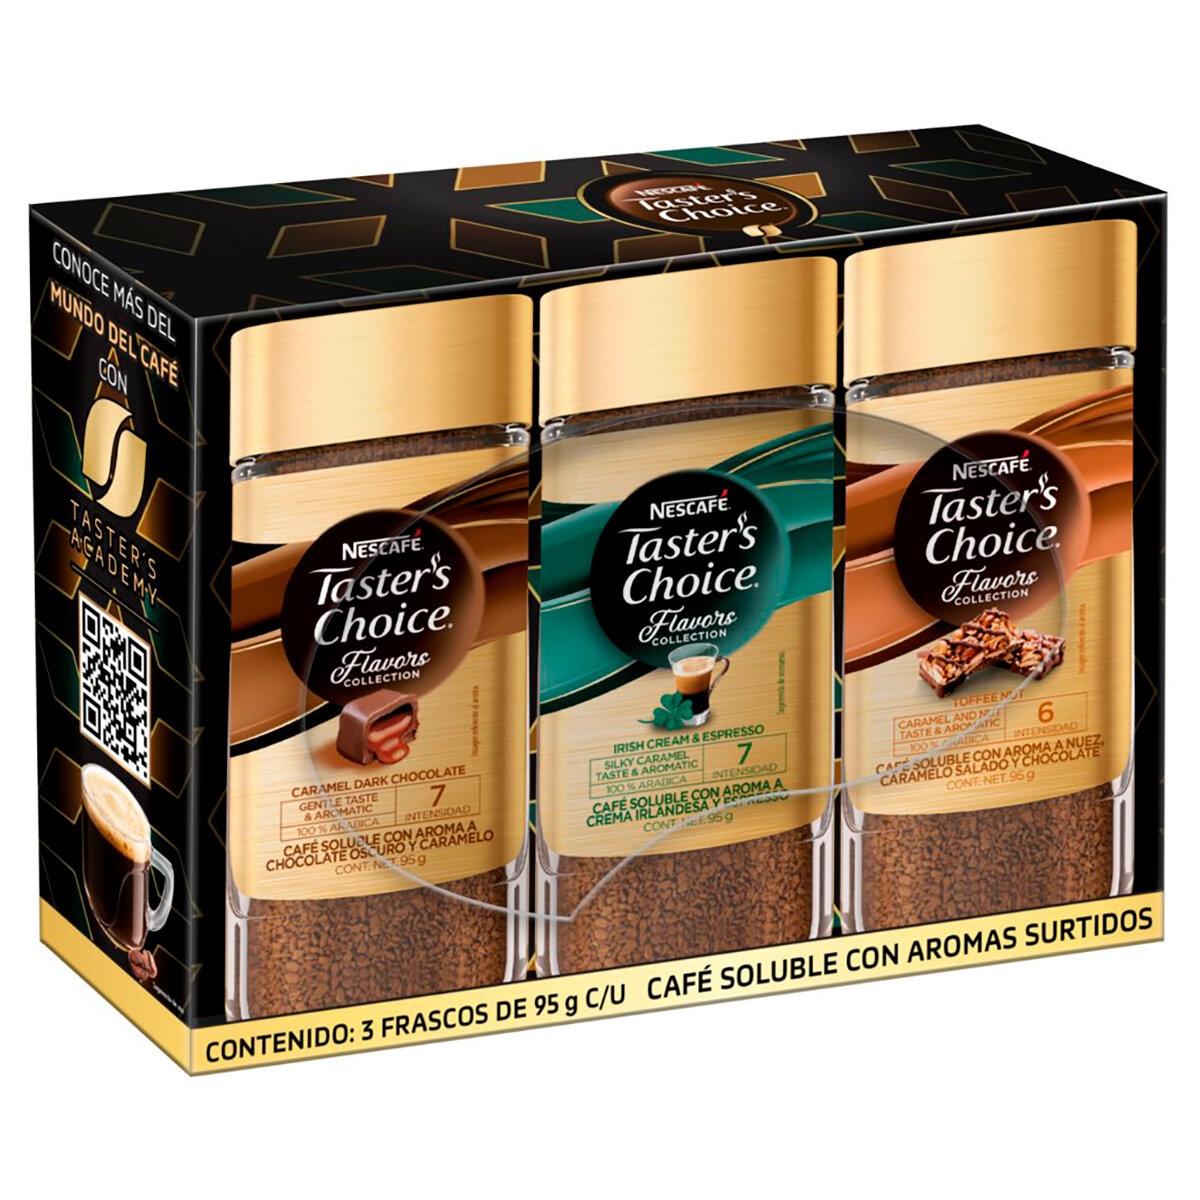 Taster's Choice Café Soluble Flavors Collection 3 pzas de 95 g